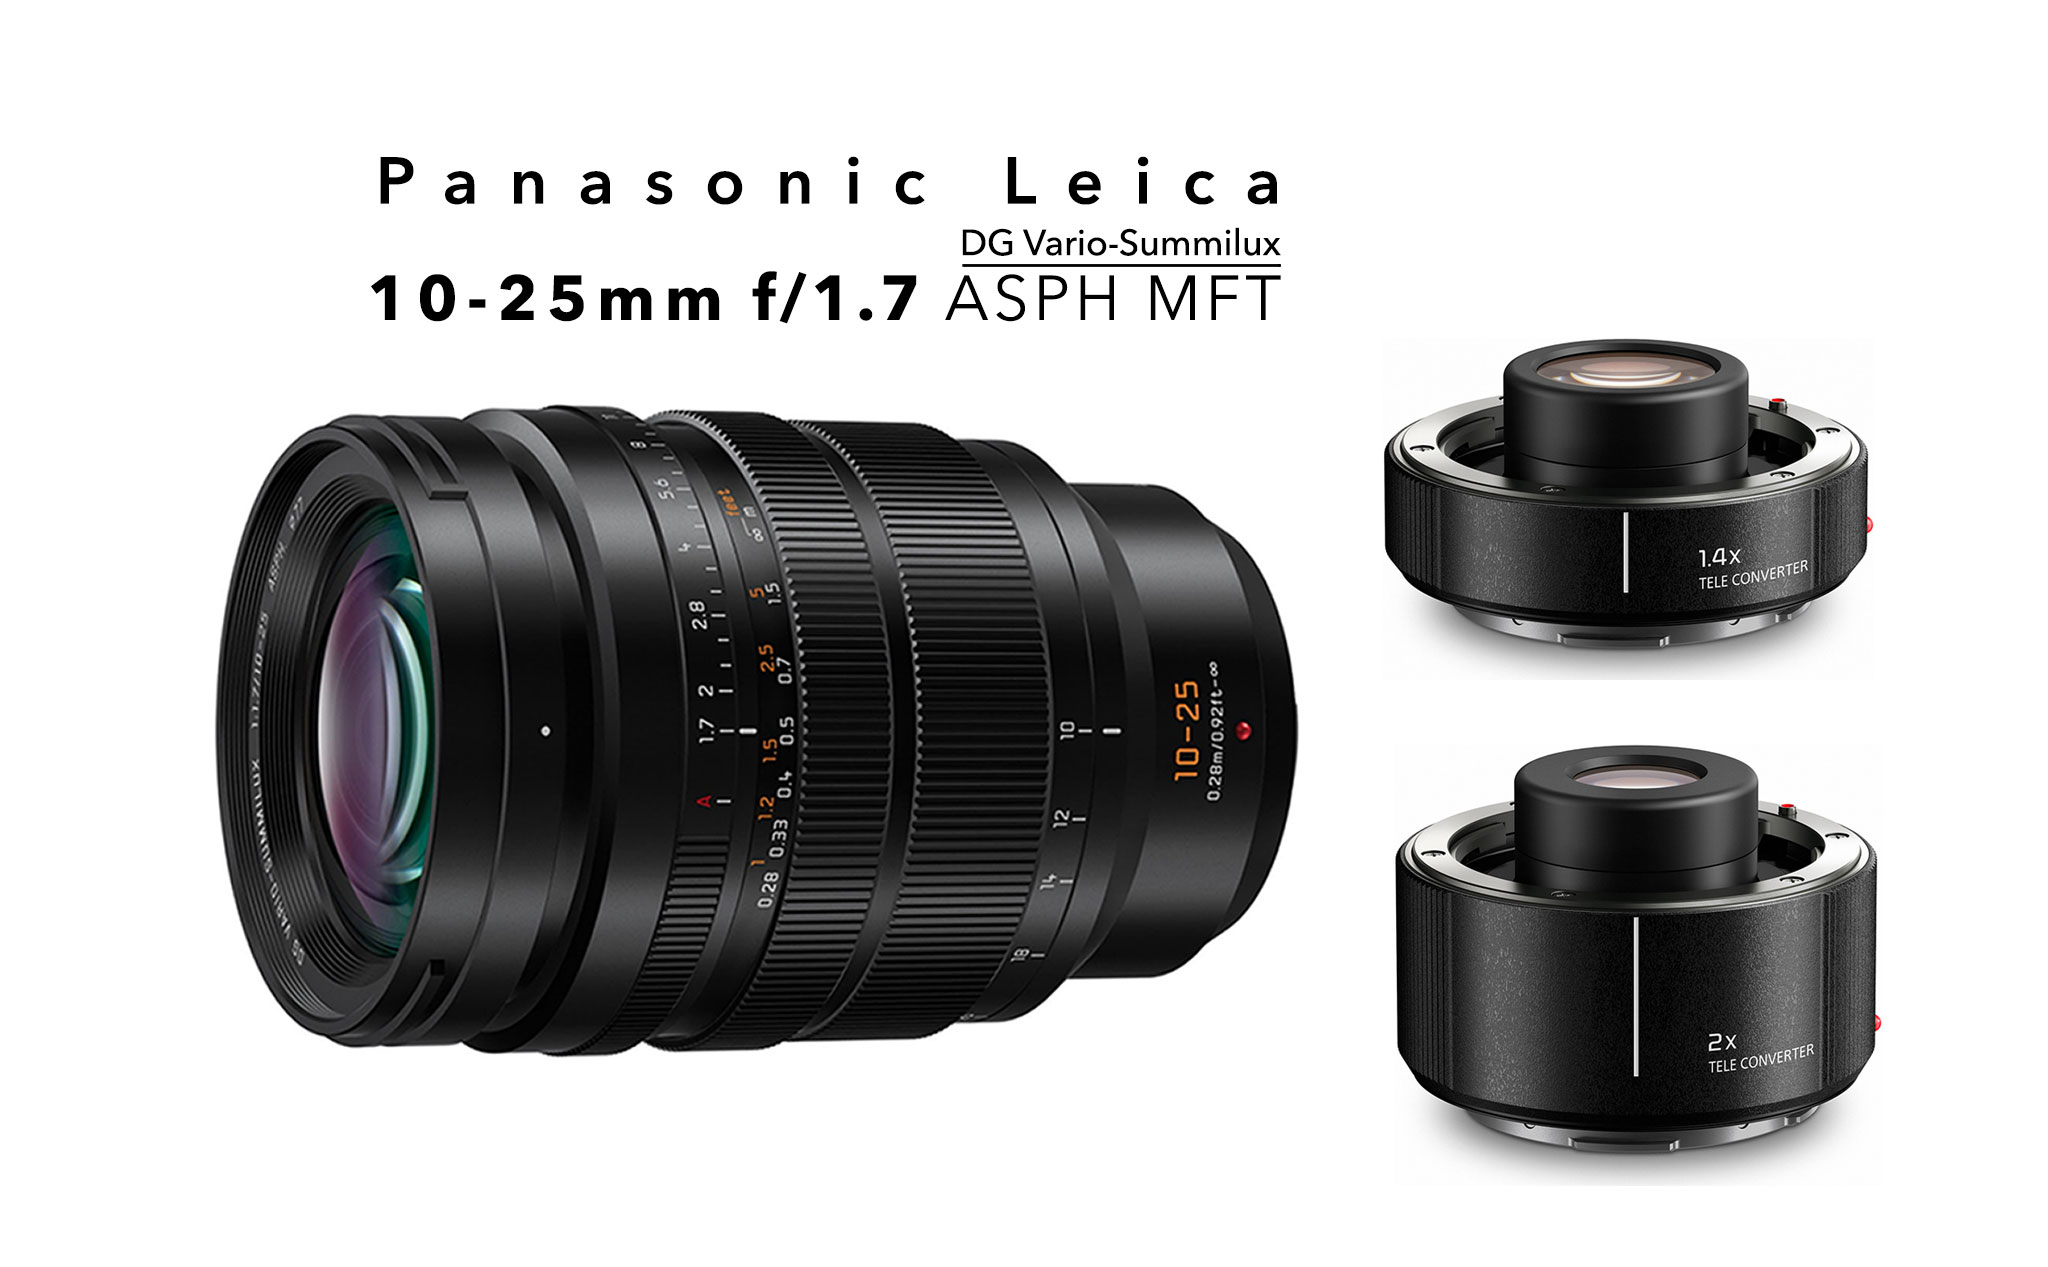 Đây là ống Panasonic Leica DG Vario-Summilux 10-25mm f/1.7 ASPH MFT, ra mắt vào 31/05, giá 2.500$